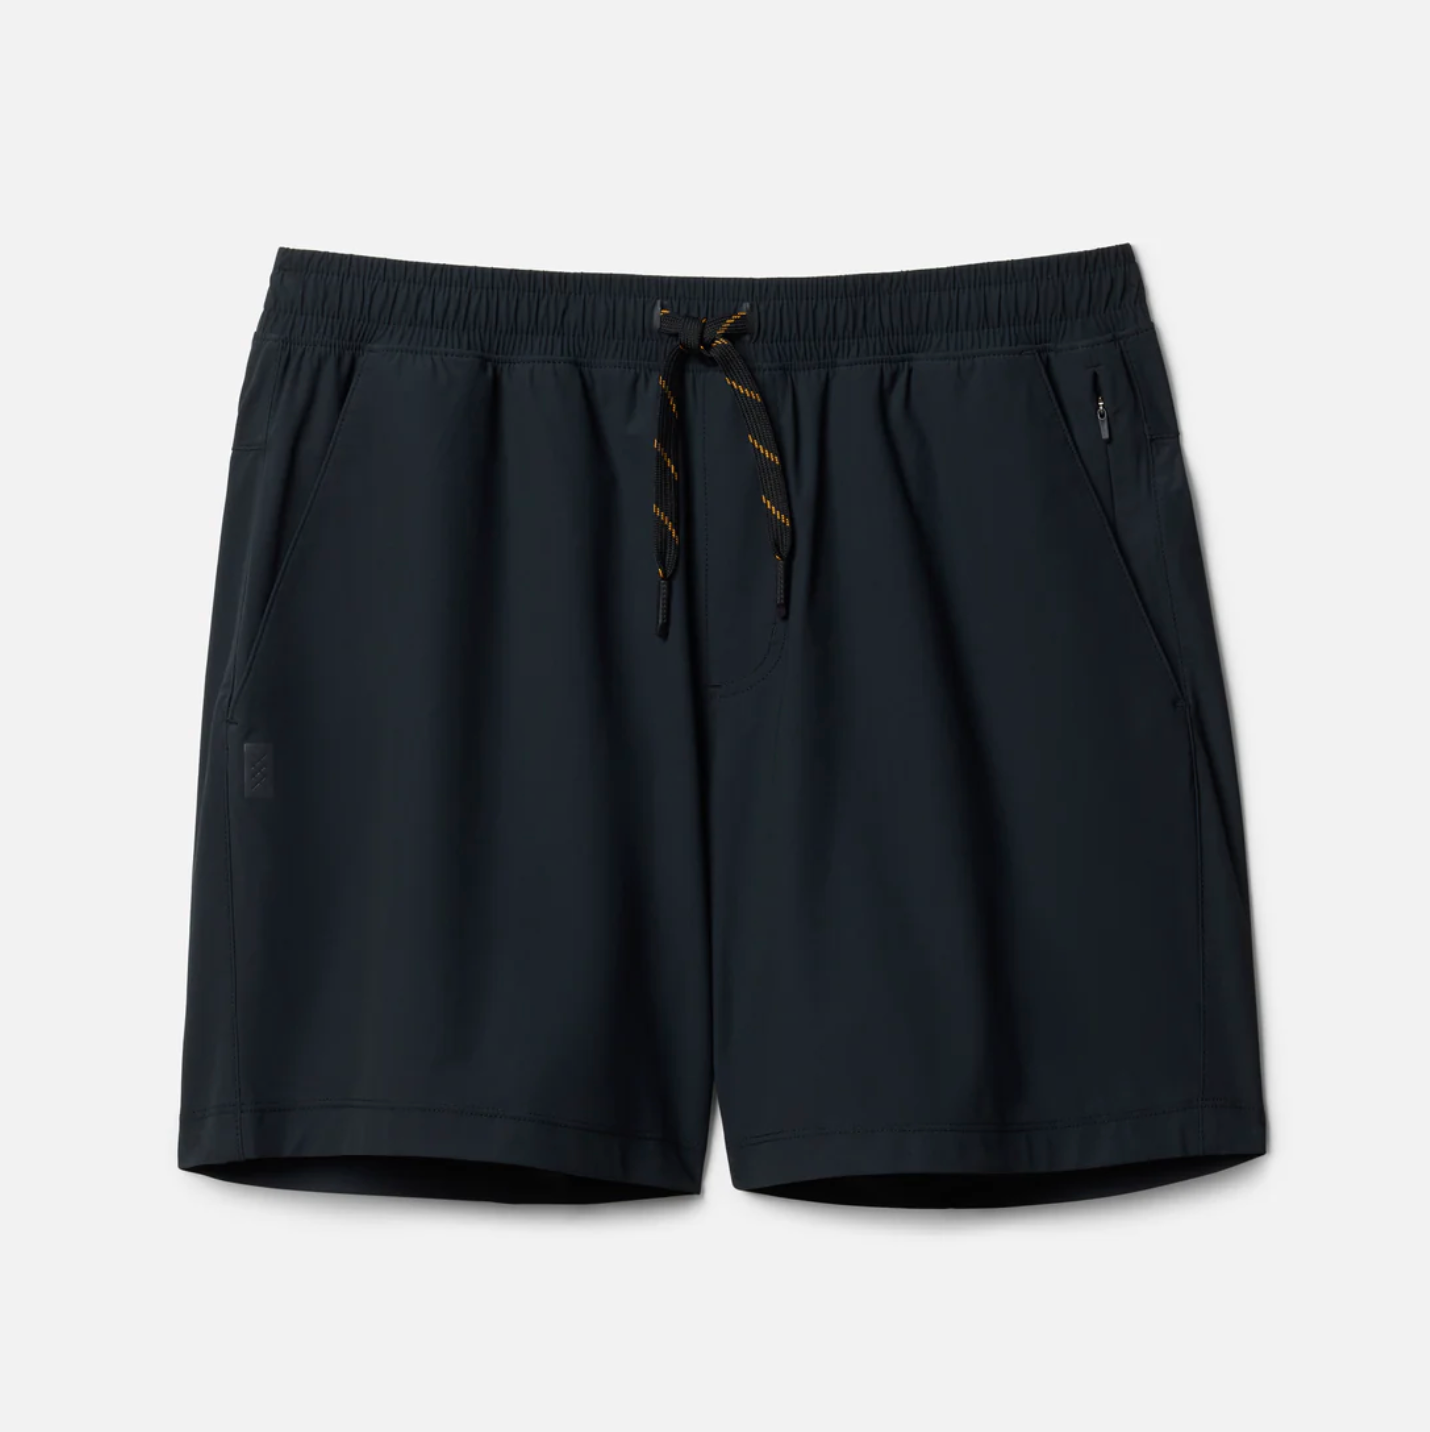 Rhone - 5" Pursuit Shorts - Unlined Black